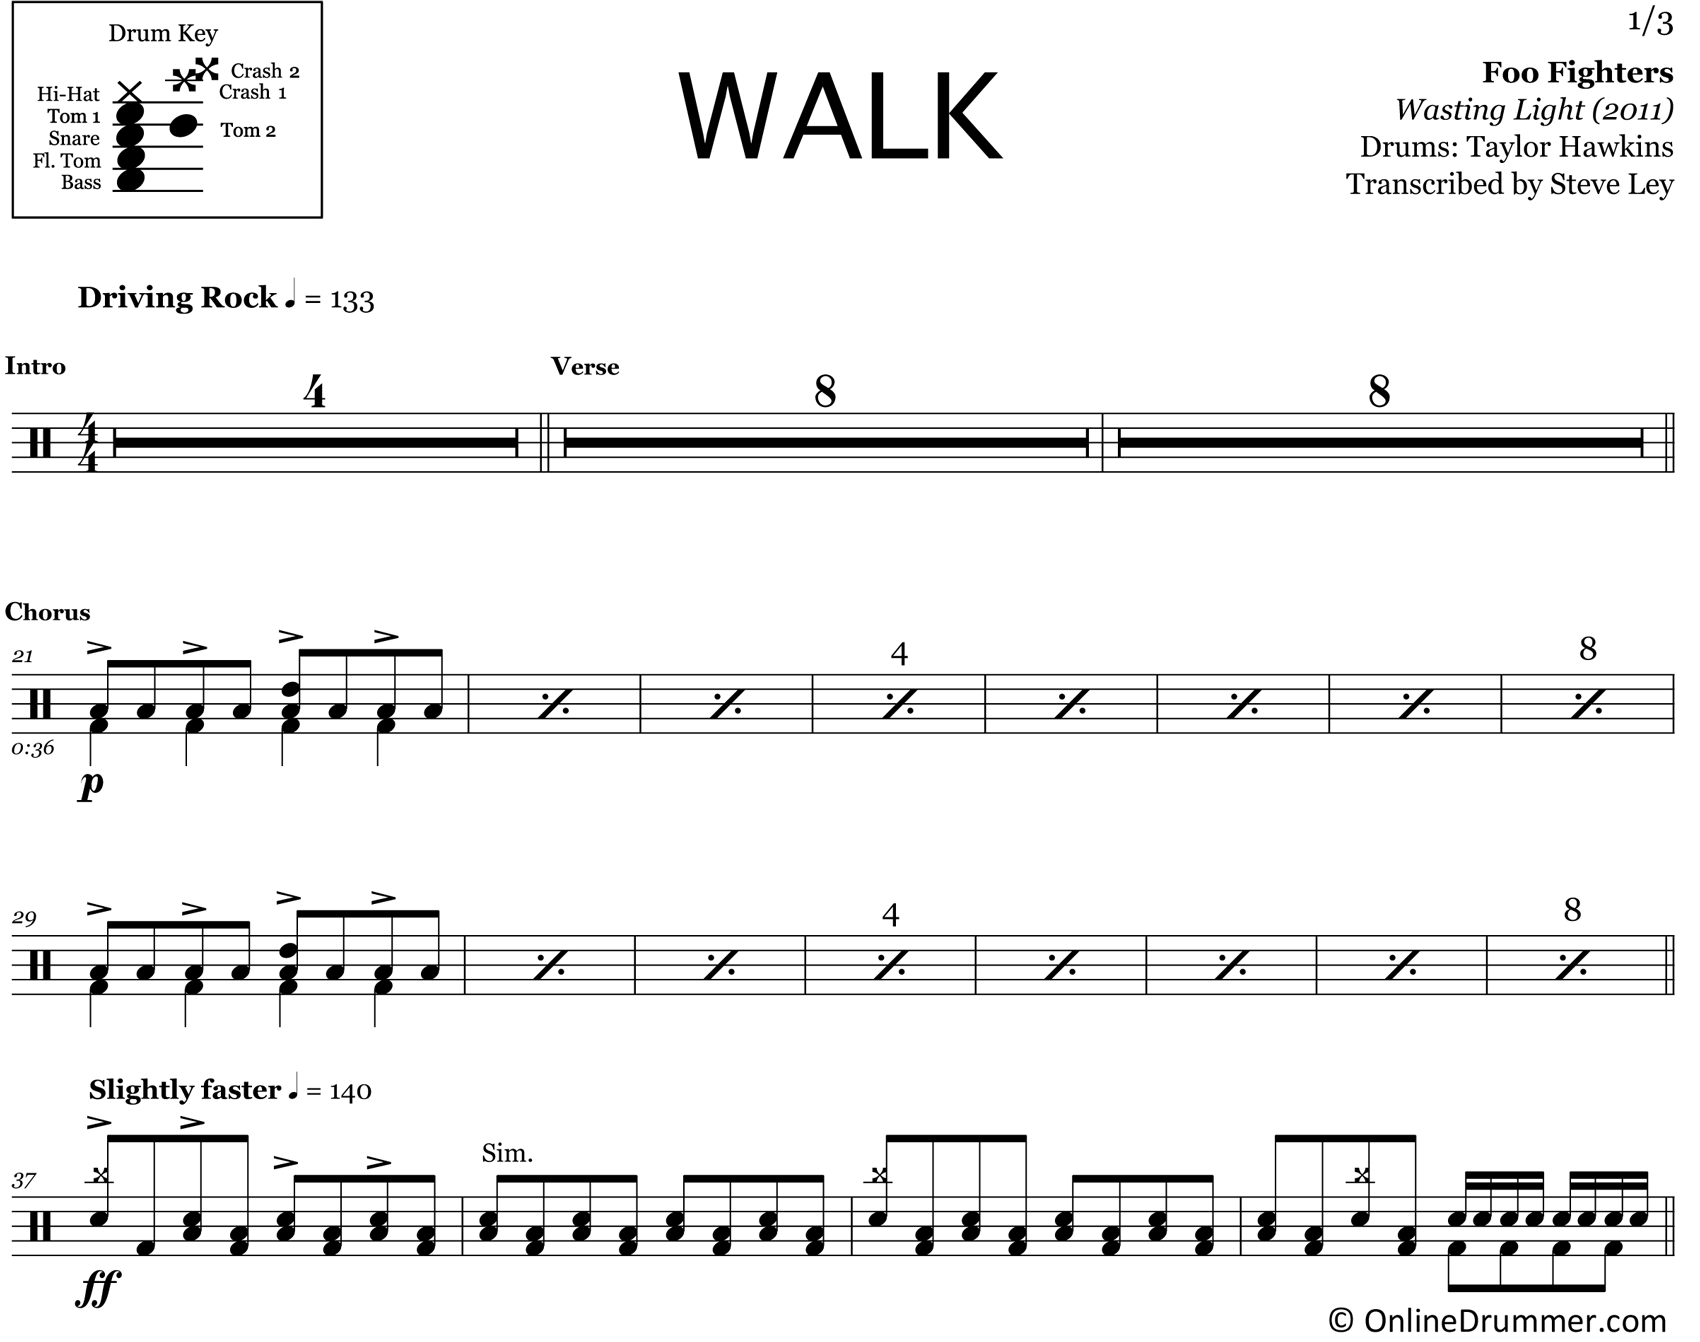 Walk - Foo Fighters - Drum Sheet Music